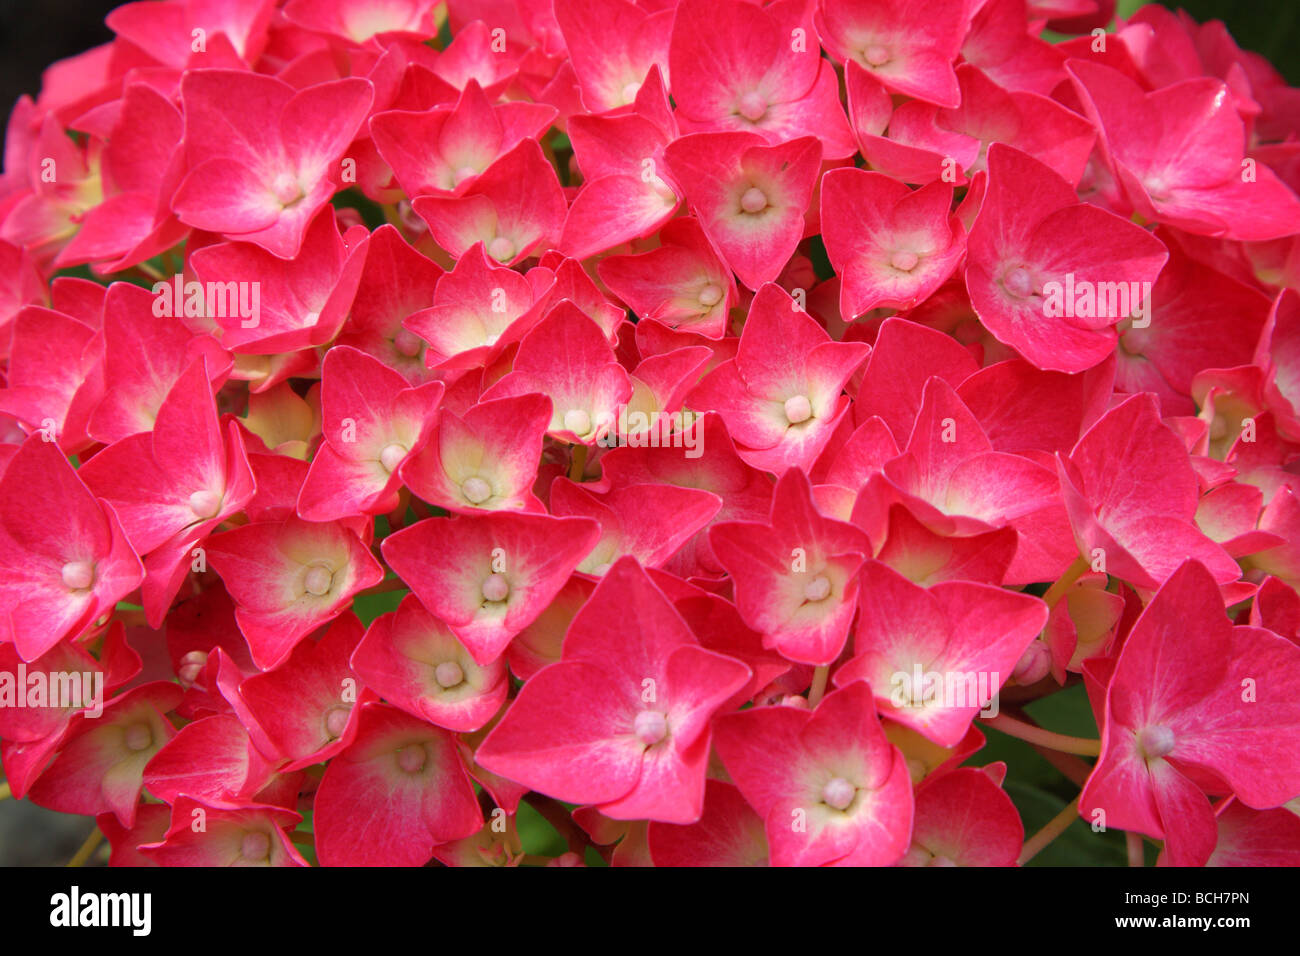 Hortensia rouge fleurs close up Banque D'Images